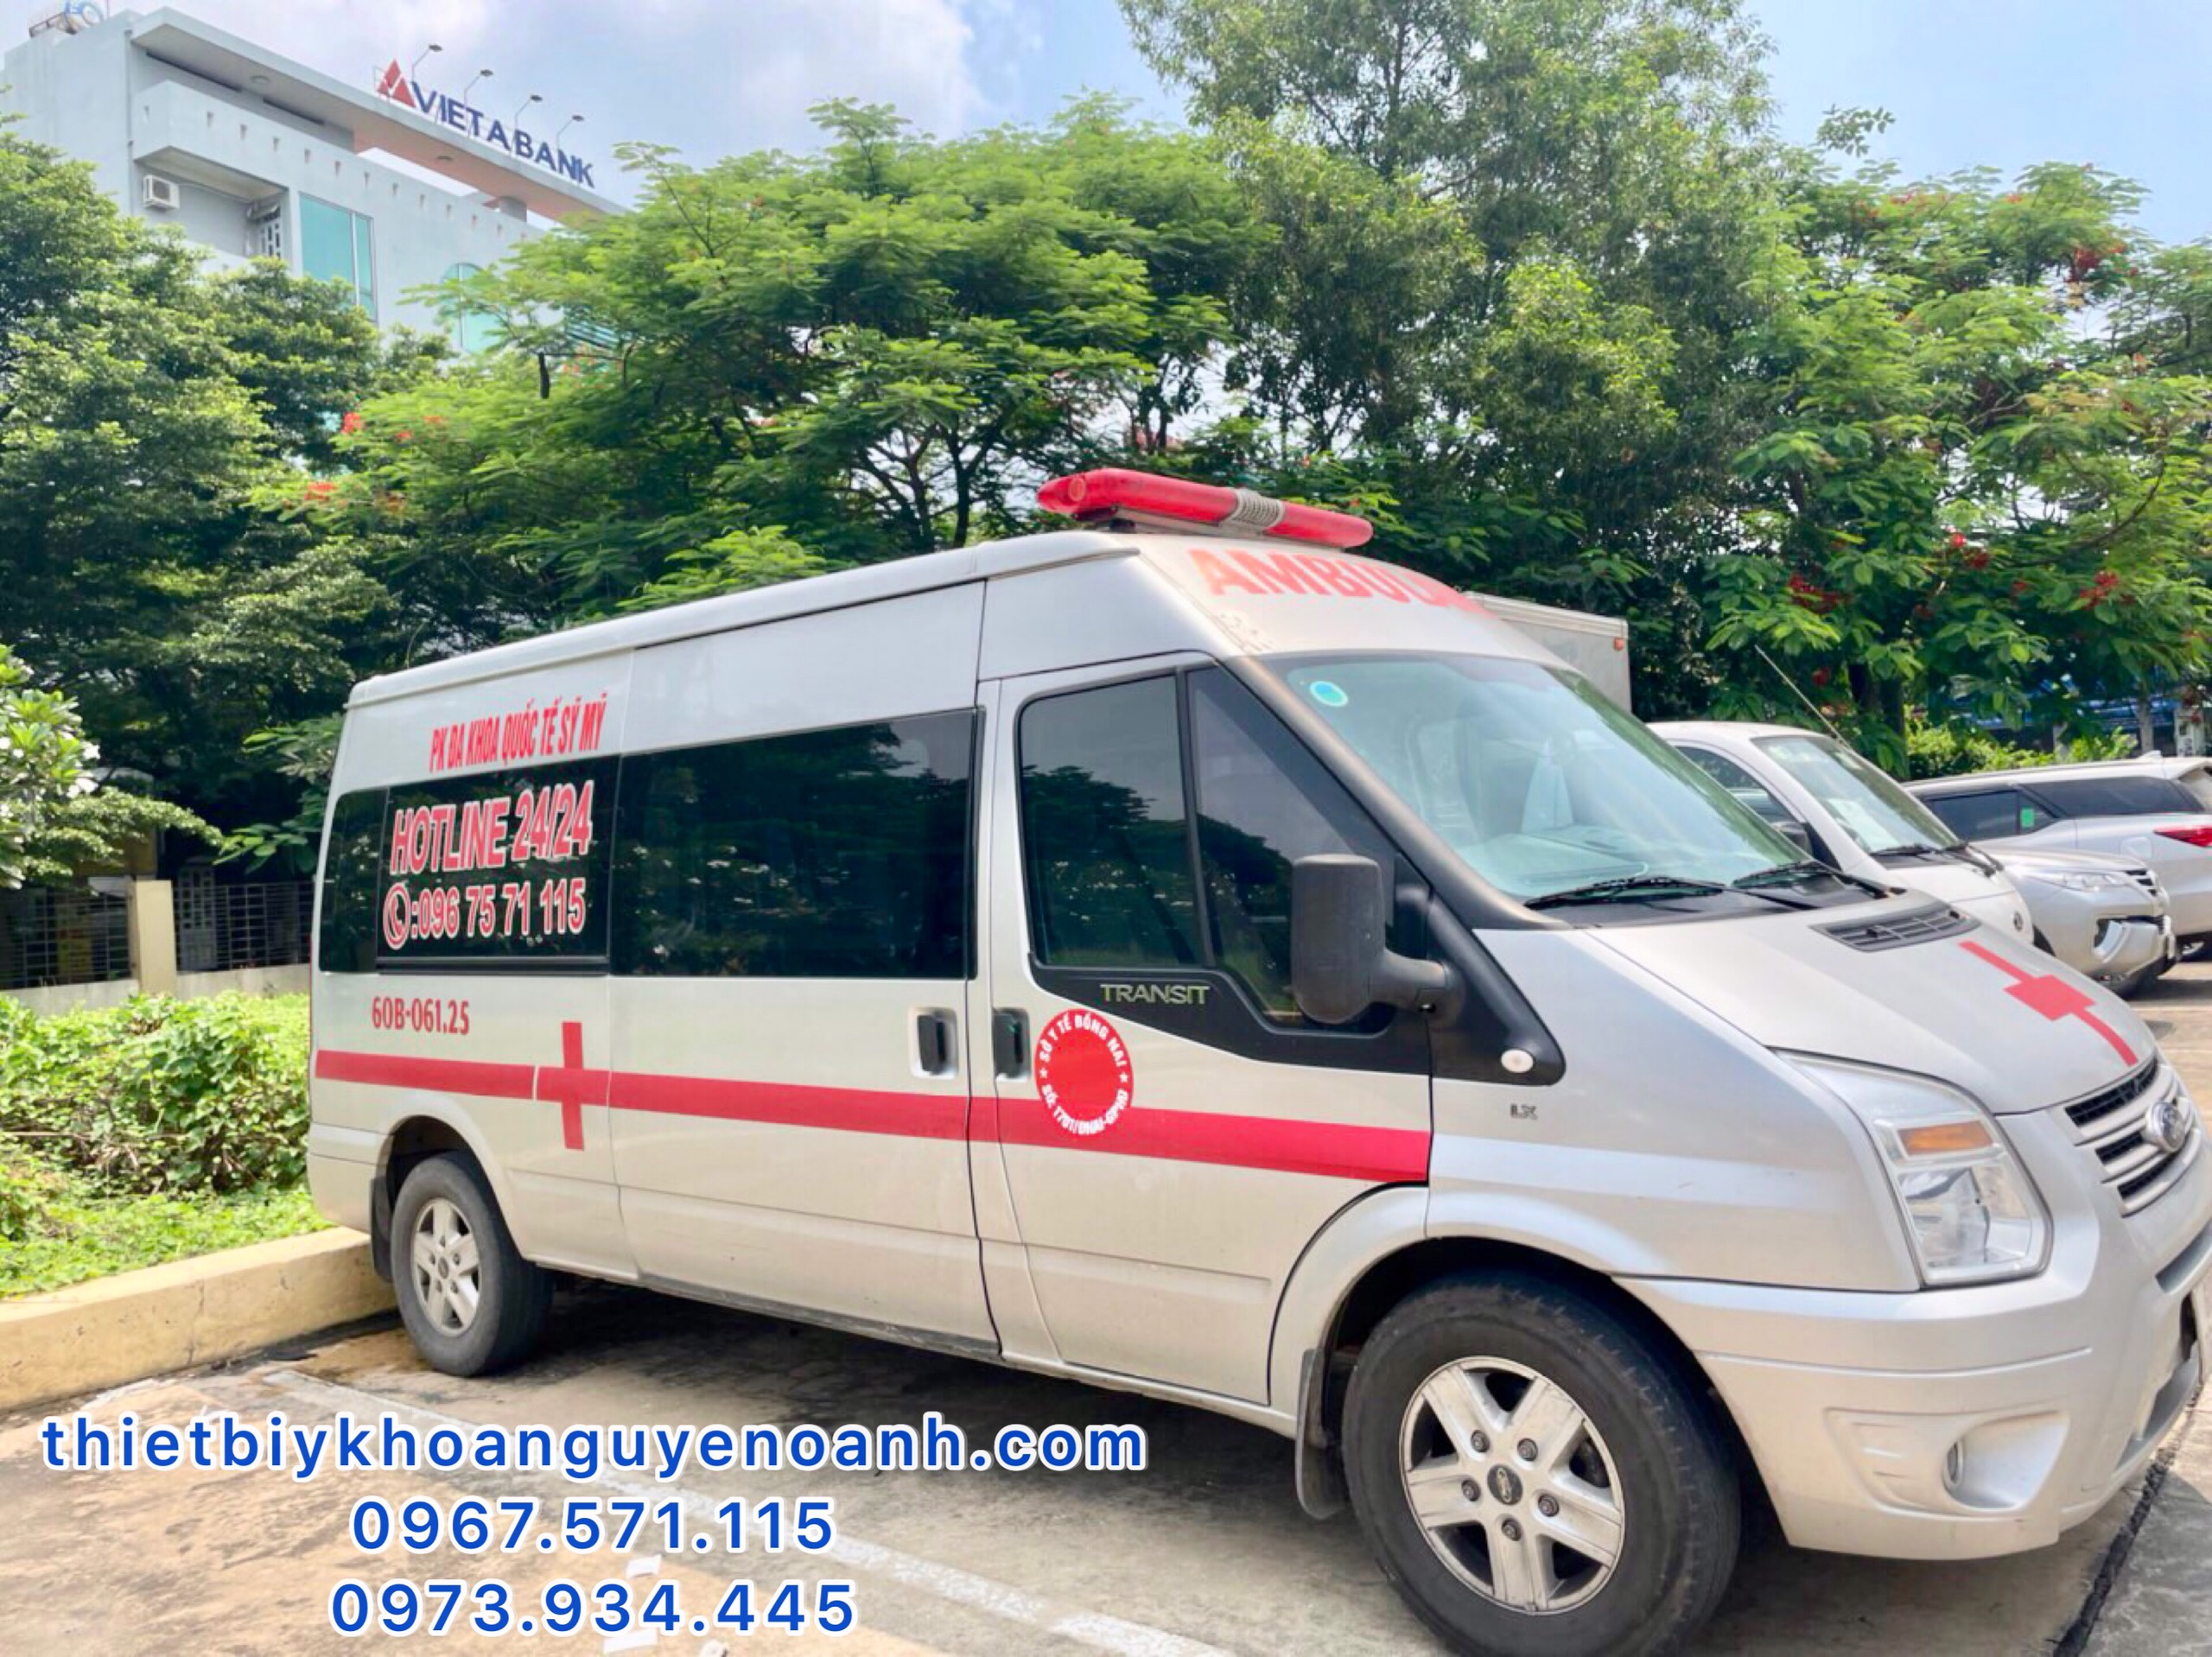 số điện thoại của xe cấp cứu Đồng Nai